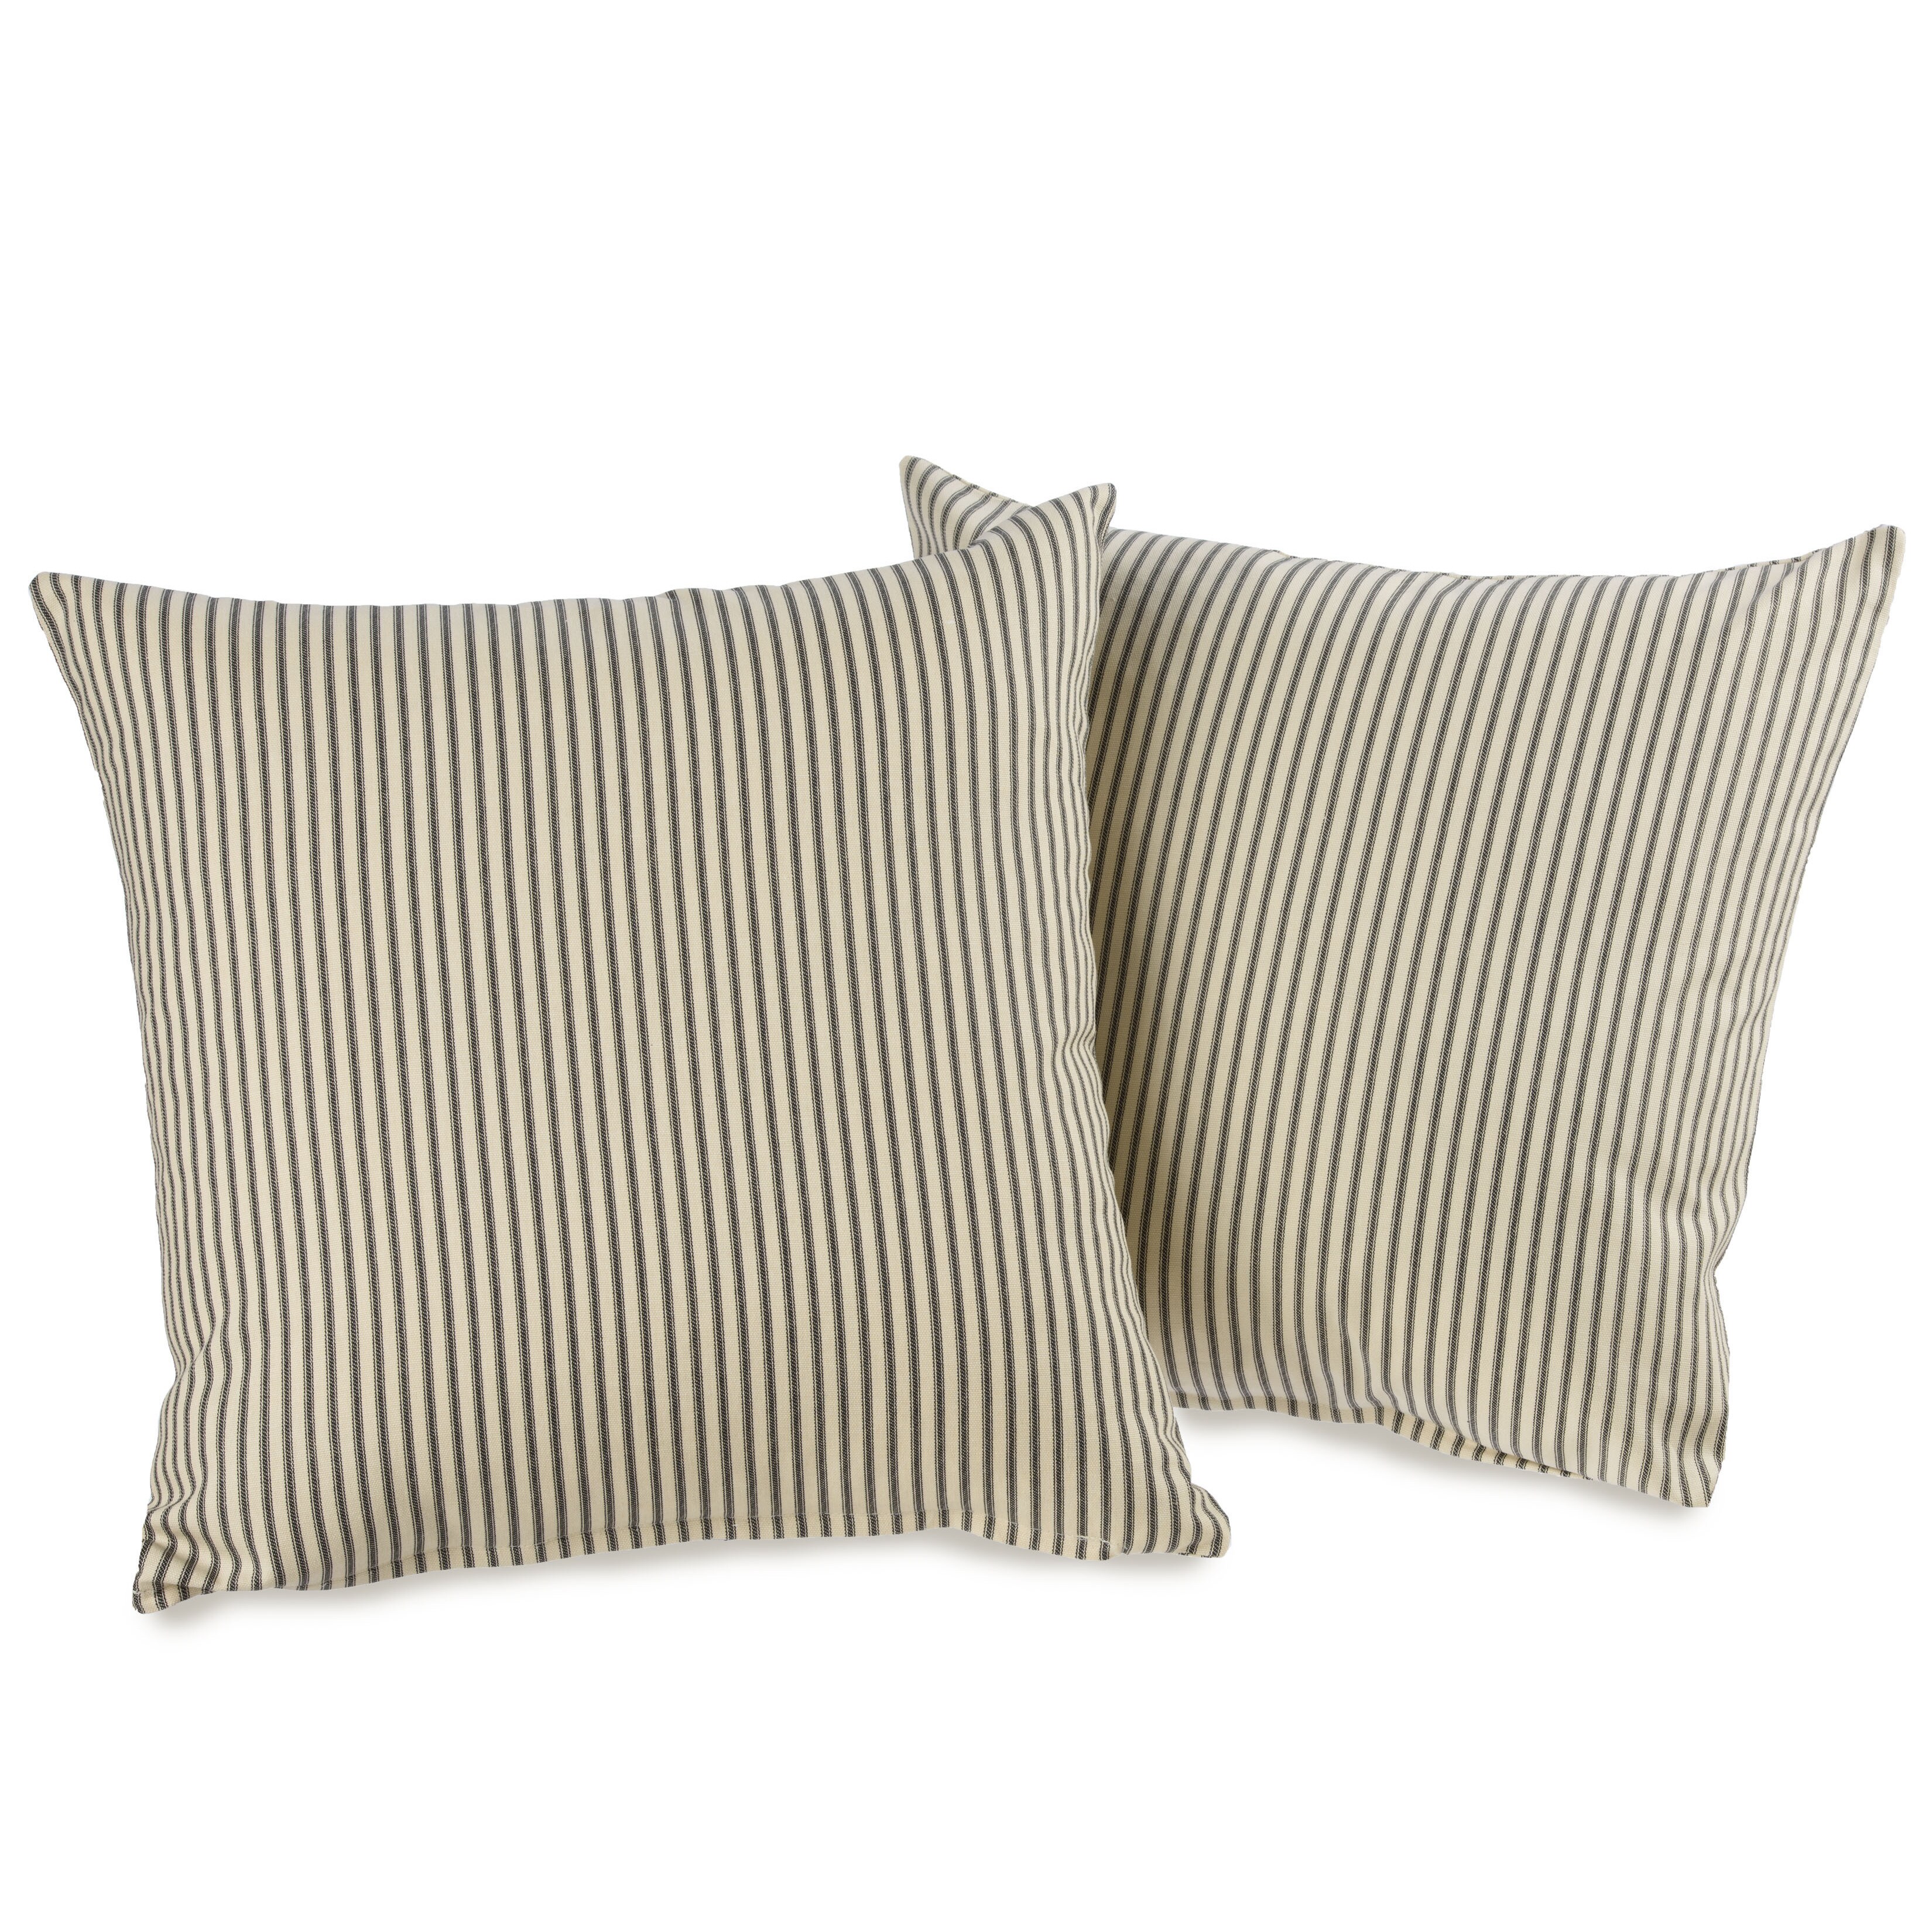 Ticking Stripe Black Decorative Throw Pillows (set of 2)